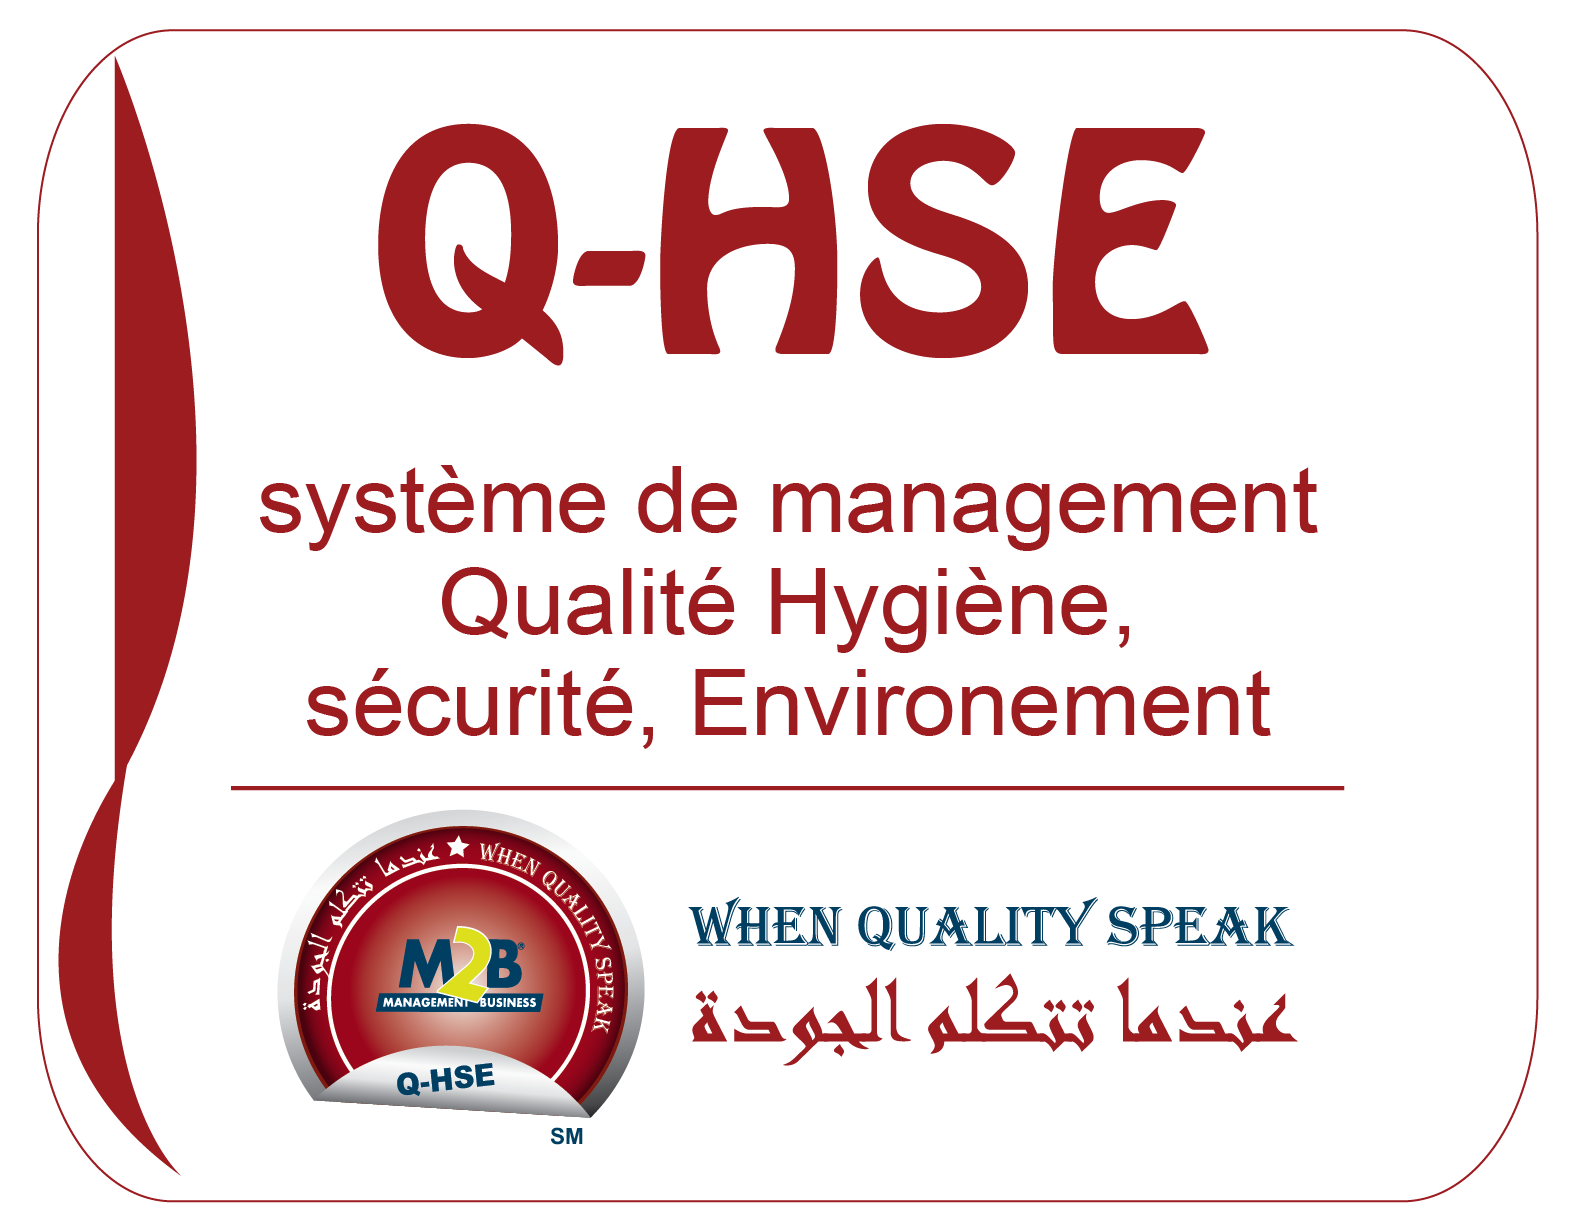 système de management qualité Hygiène, sécurité, Environement (QHSE) m2b consulting